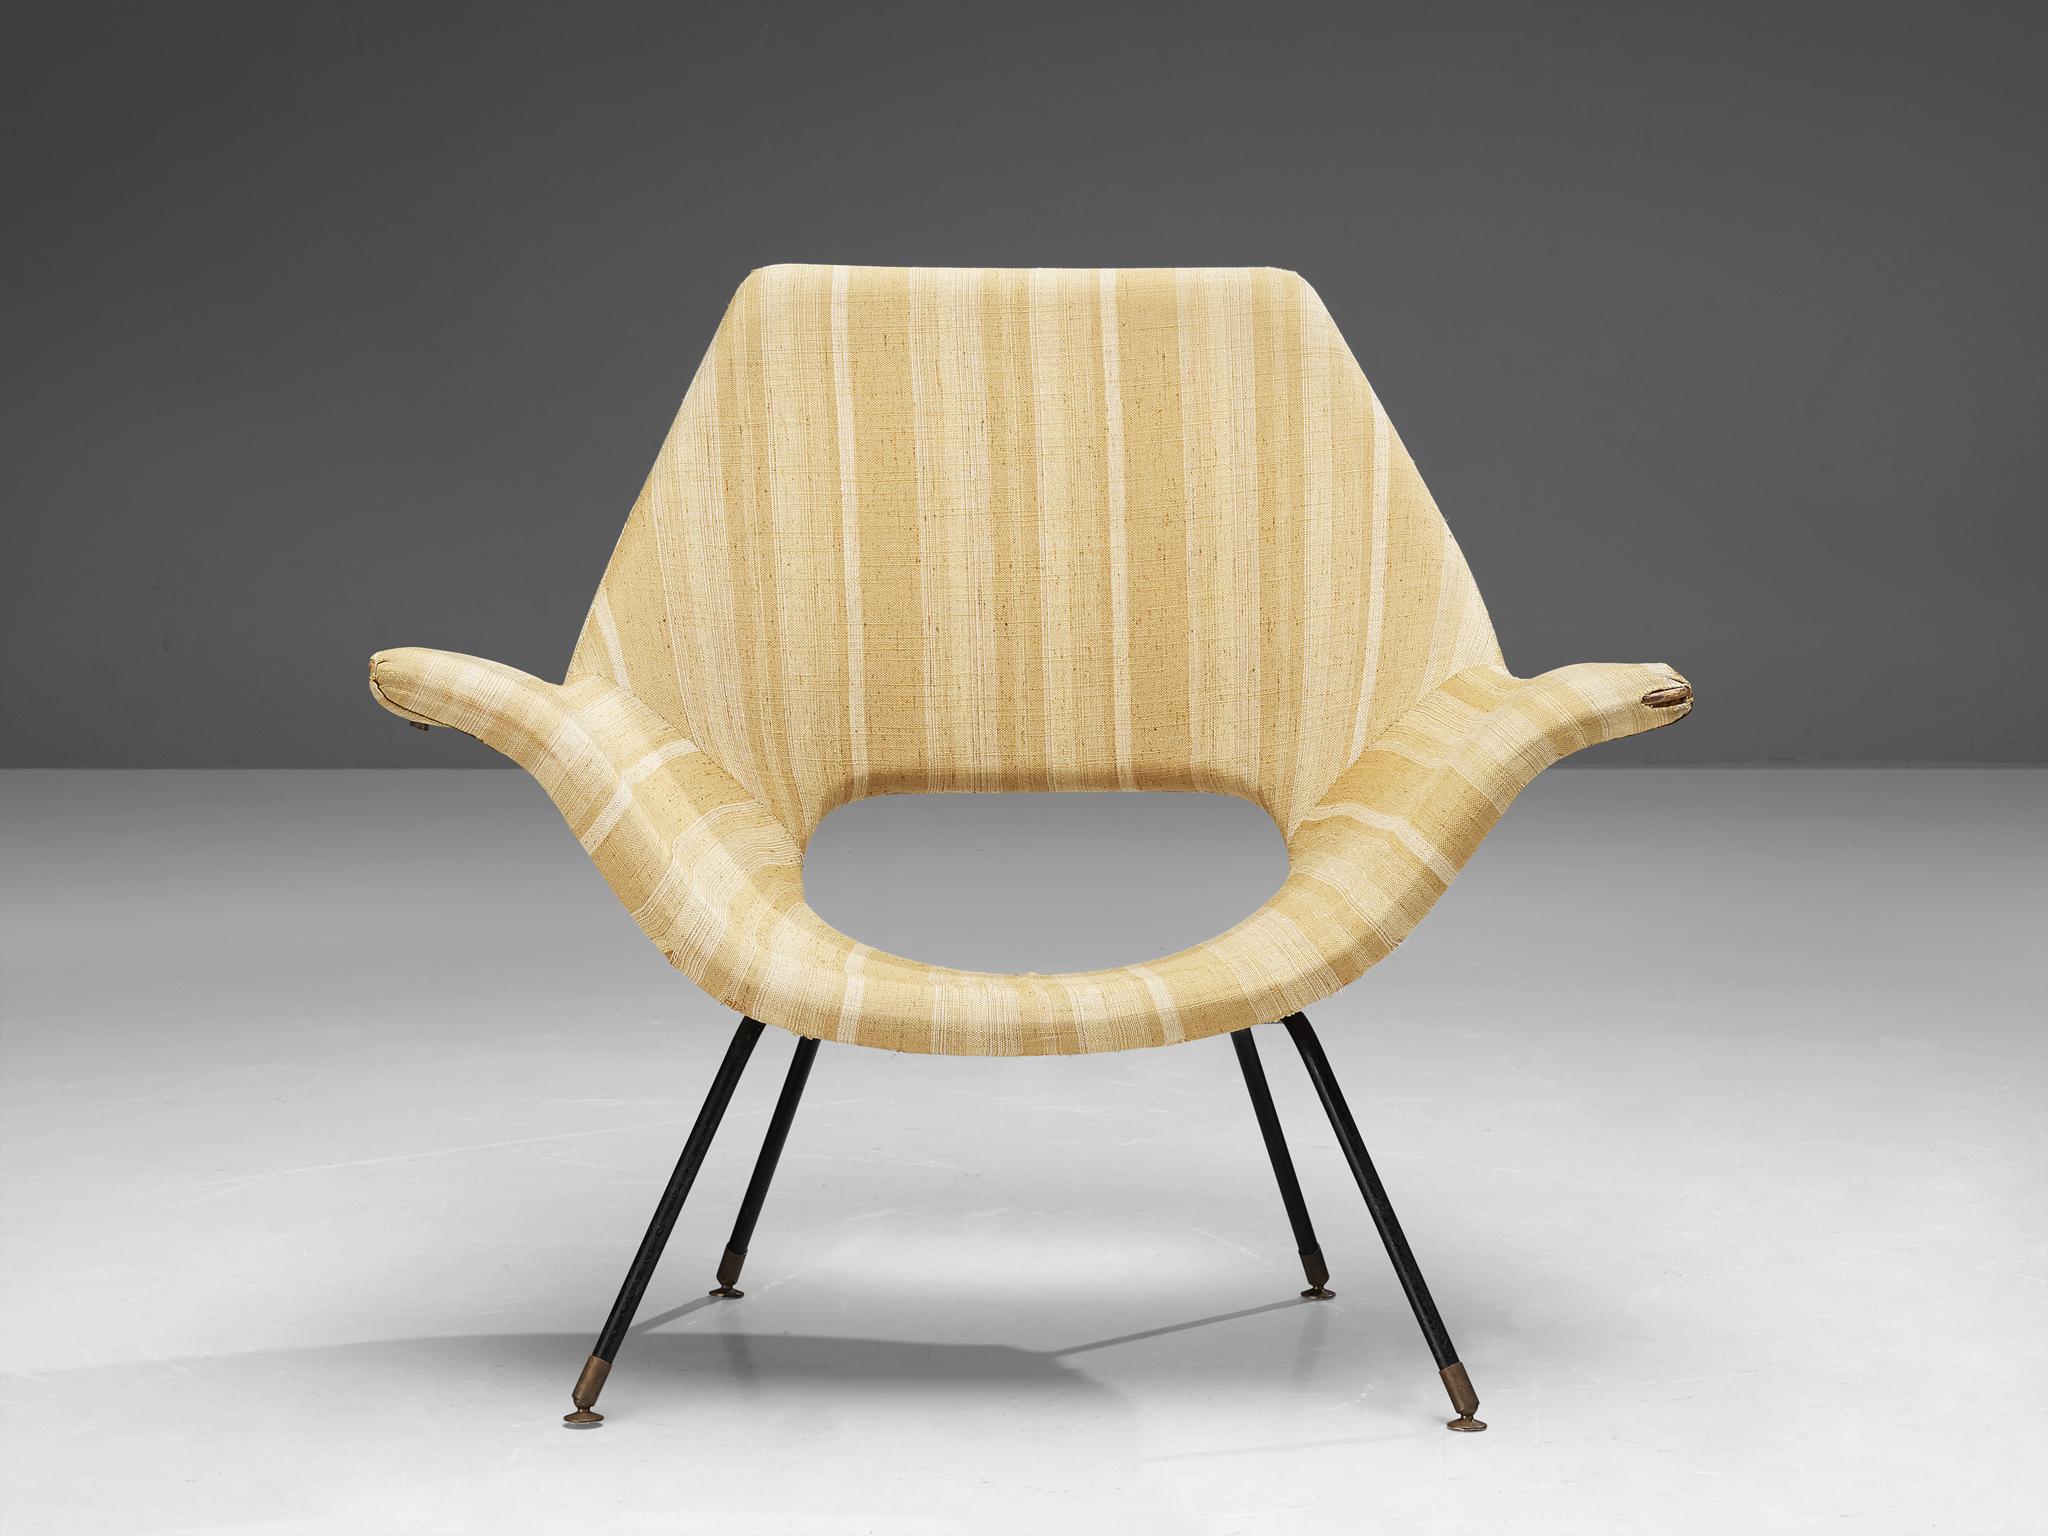 Augusto Bozzi pour Saporiti, chaise longue, tissu, métal, laiton, Italie, années 1960.

Cette chaise longue italienne d'Augusto Bozzi (1924-1982) se caractérise par une esthétique modeste grâce à ses lignes droites et ses bords arrondis. La partie